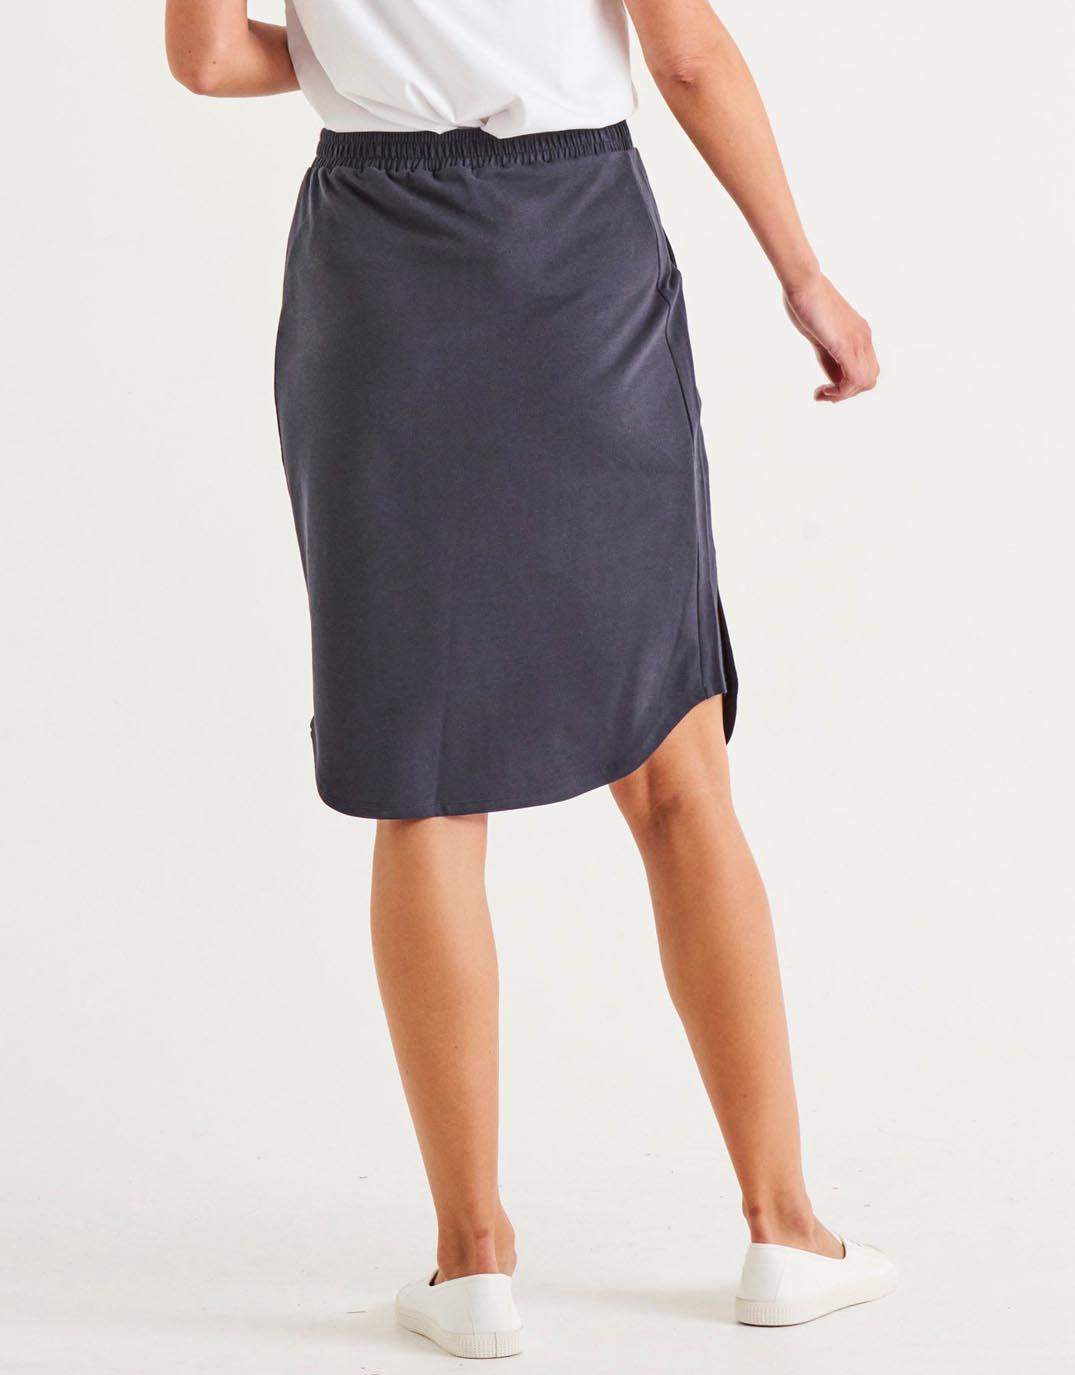 Betty Basics - Evie Skirt - Coal - White & Co Living Skirts